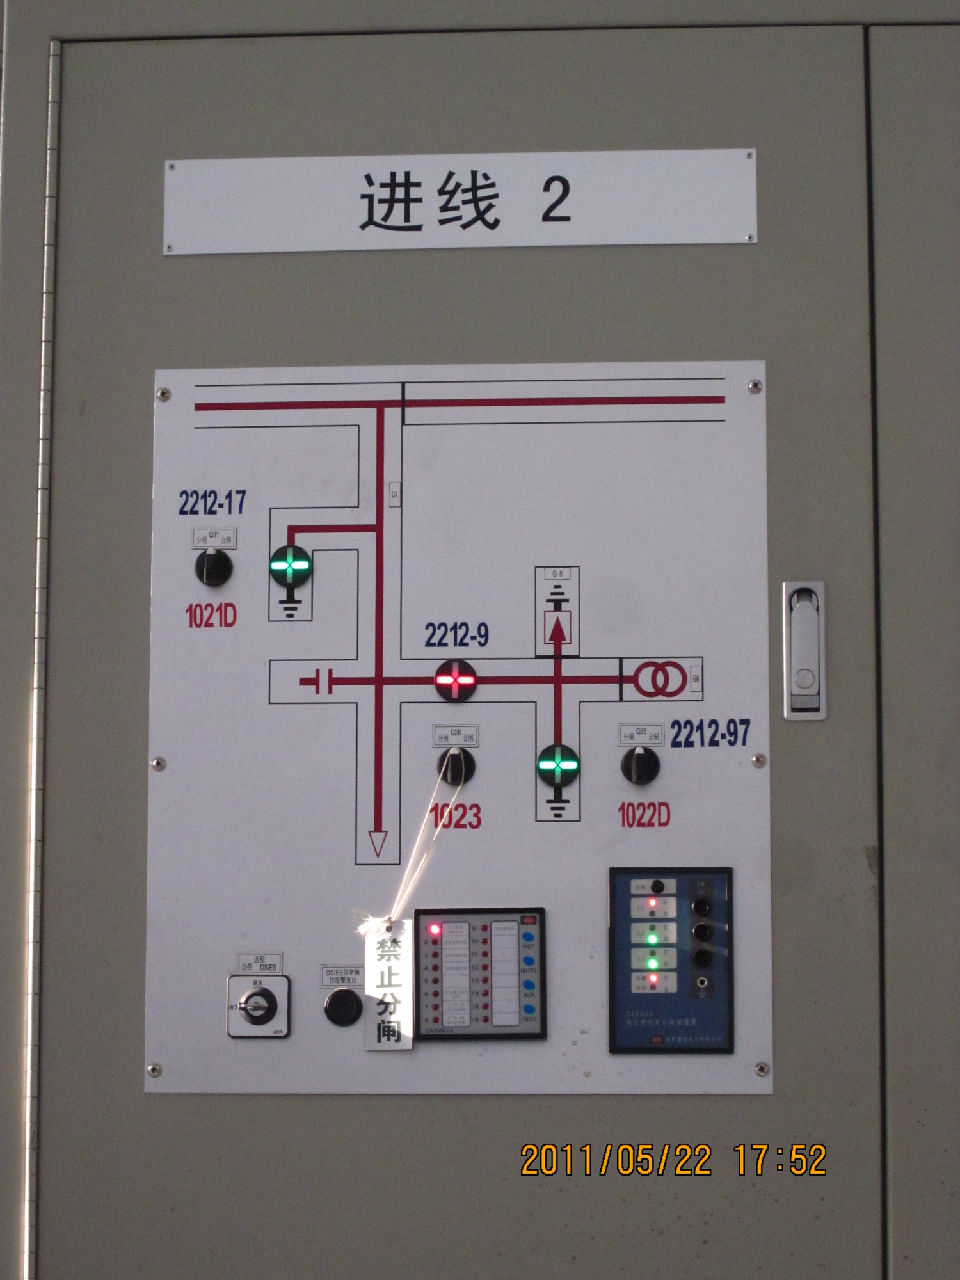 京滬高鐵李營牽引所GIS的配套套用